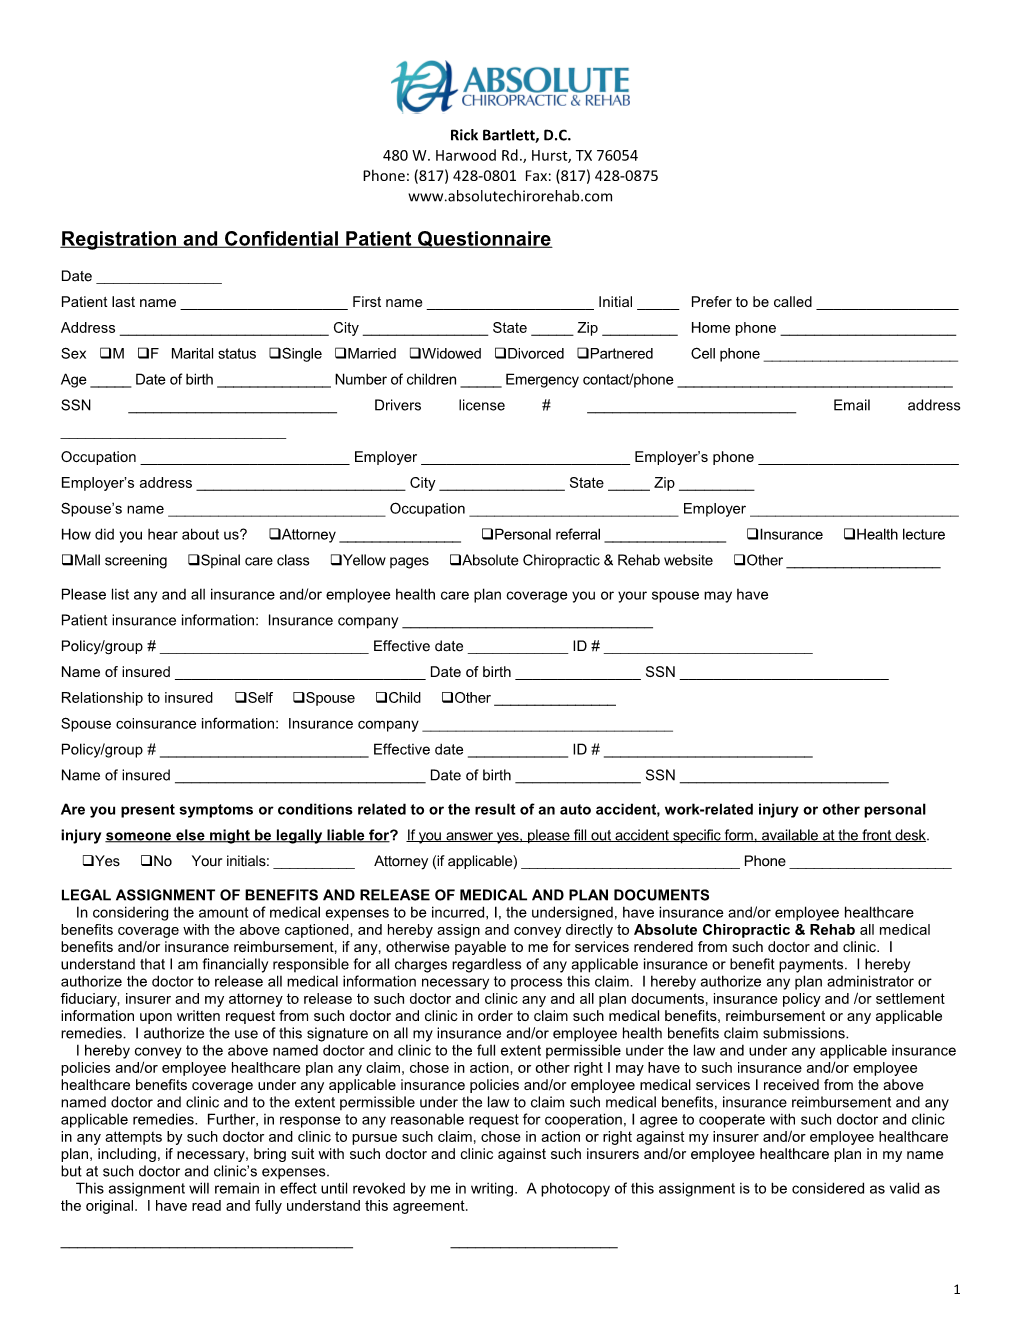 Registration and Confidential Patient Questionnaire